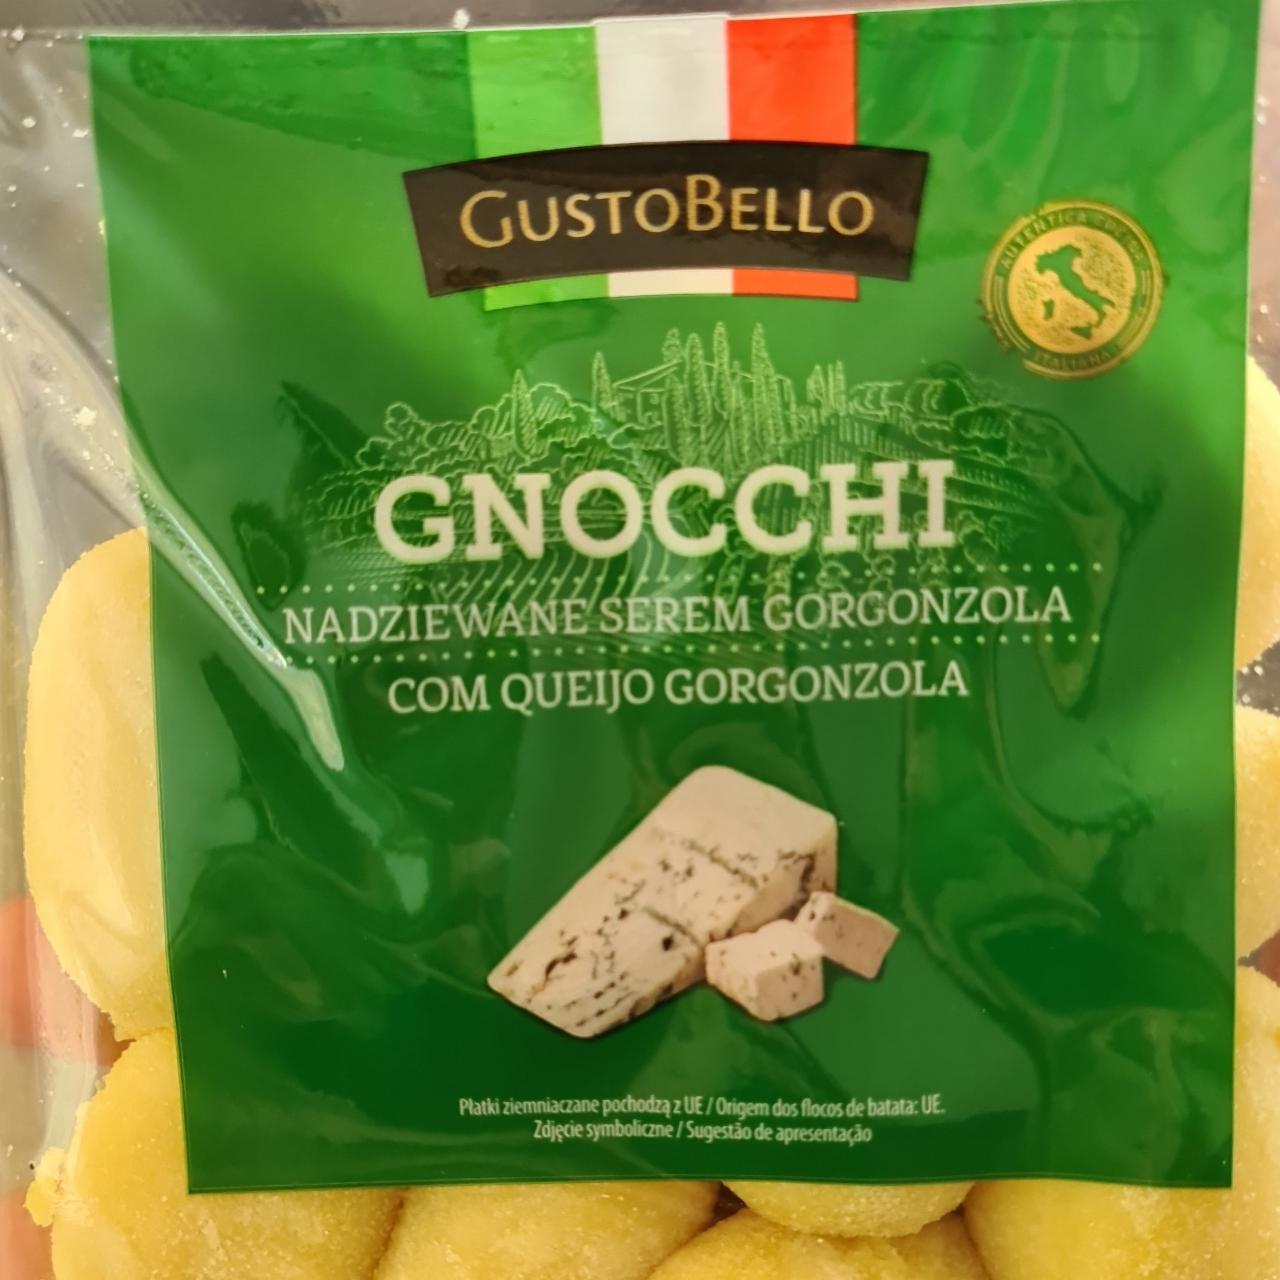 Zdjęcia - Gnocchi nadziewane serem gorgonzola GustoBello